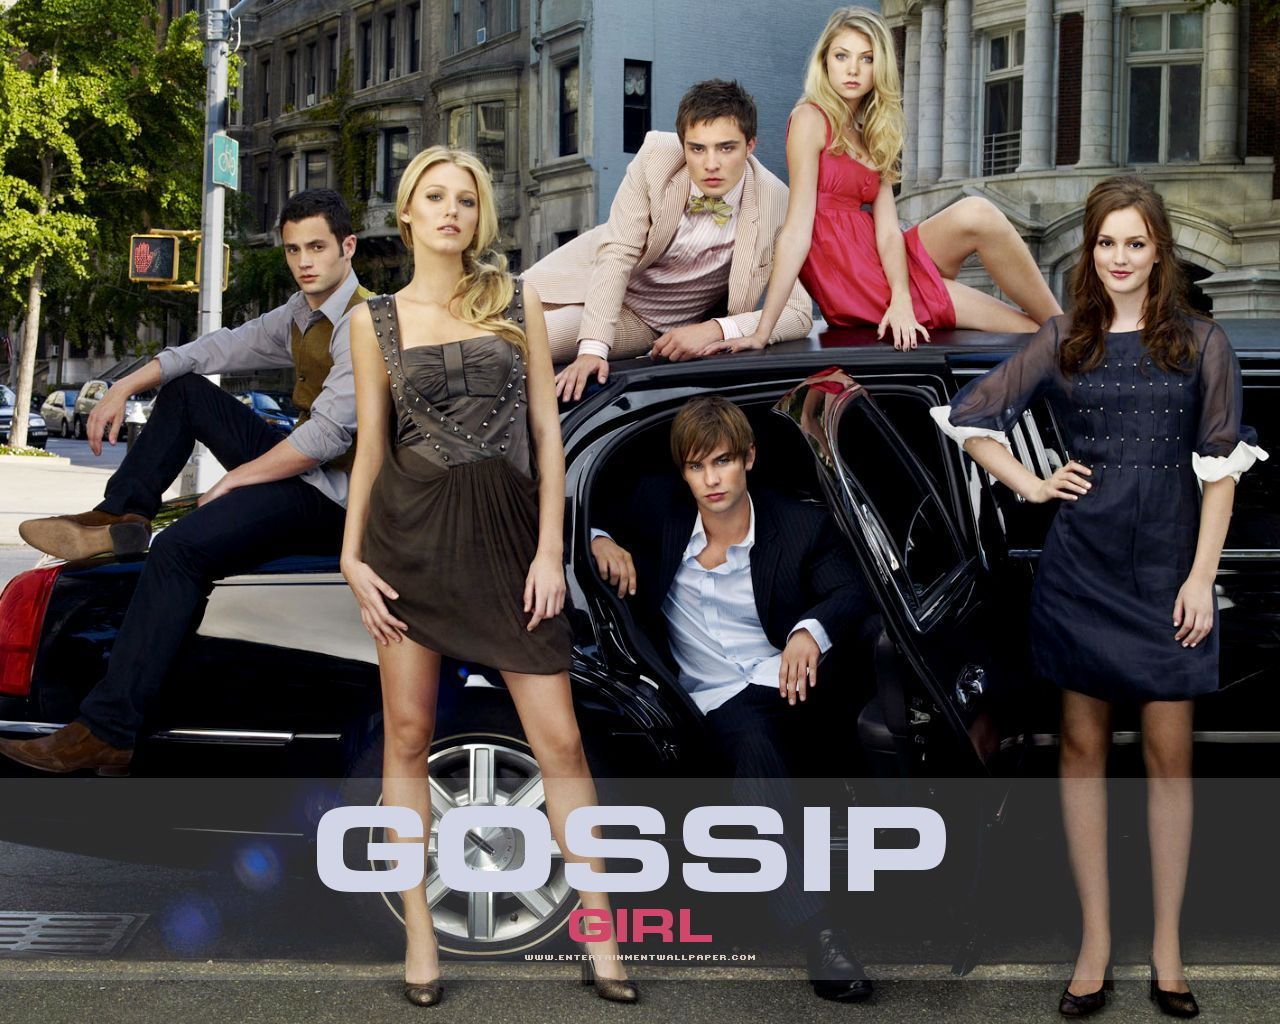 gossip girl season 3 torrent download tpb torrent